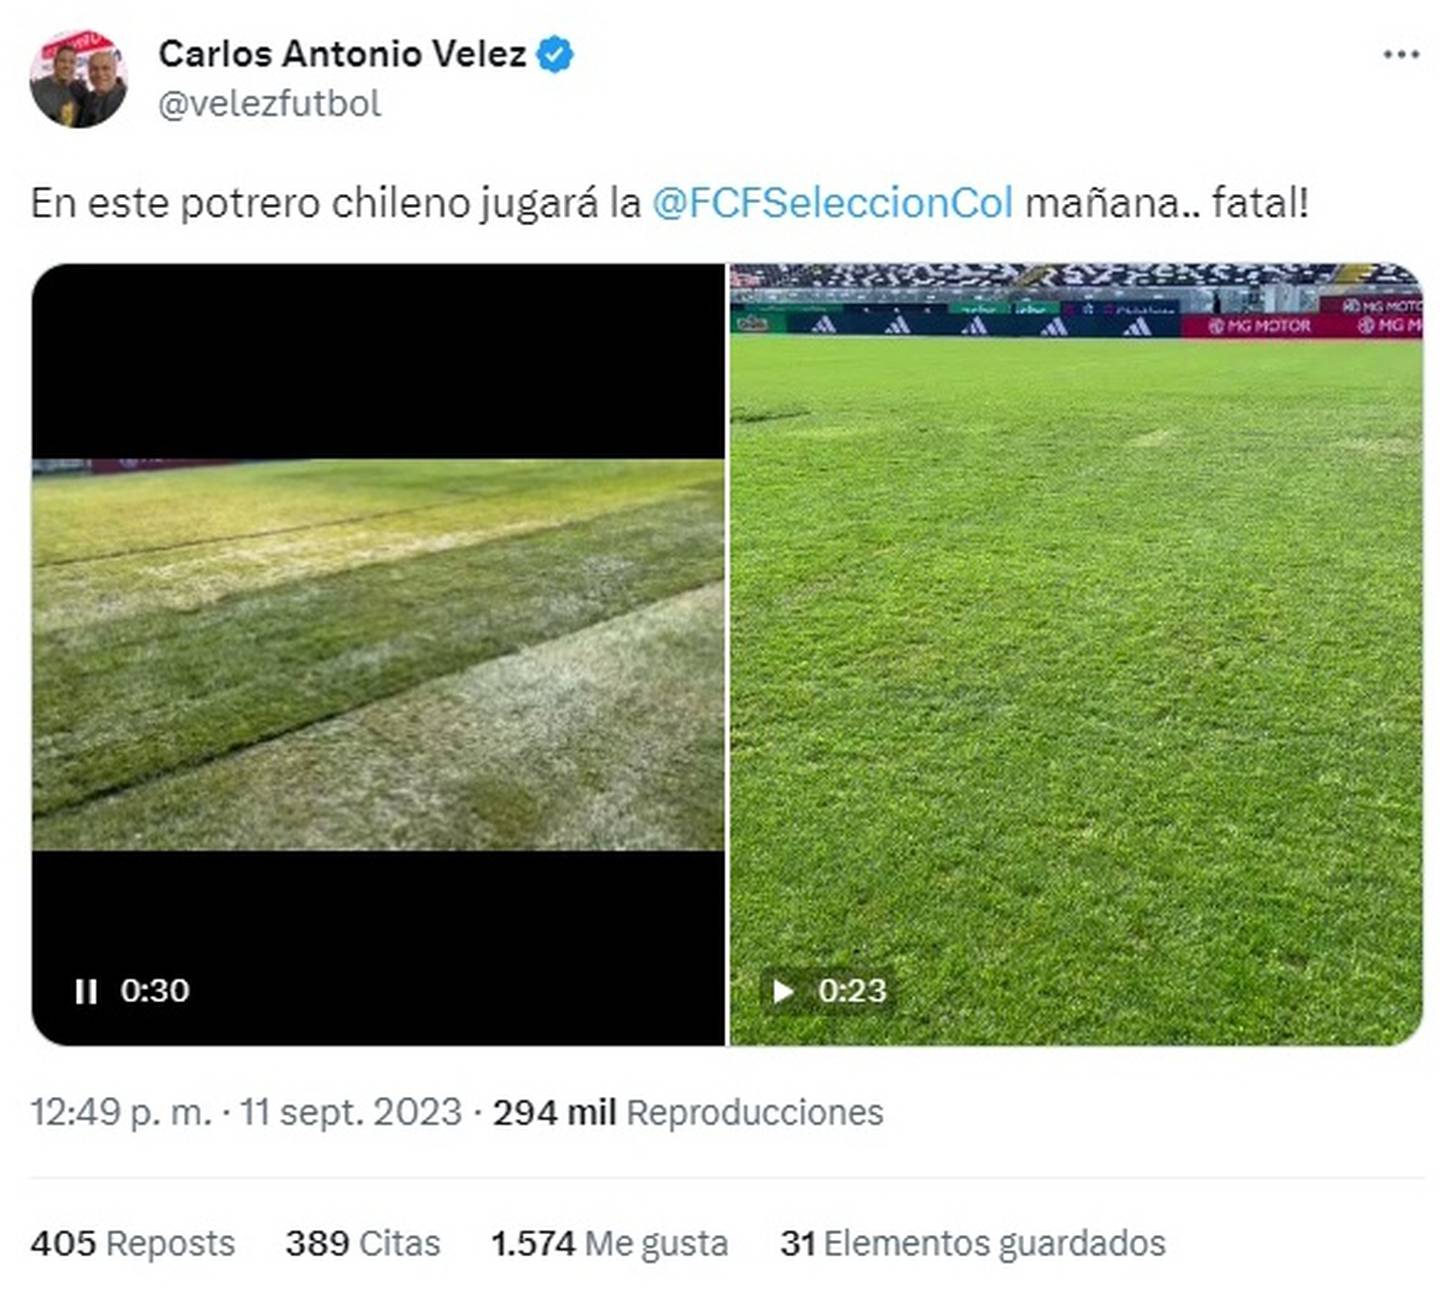 El comunicador cafetero calificó de "potrero" a la cancha del estadio Monumental a un día de disputarse ahí el encuentro entre Chile y Colombia.